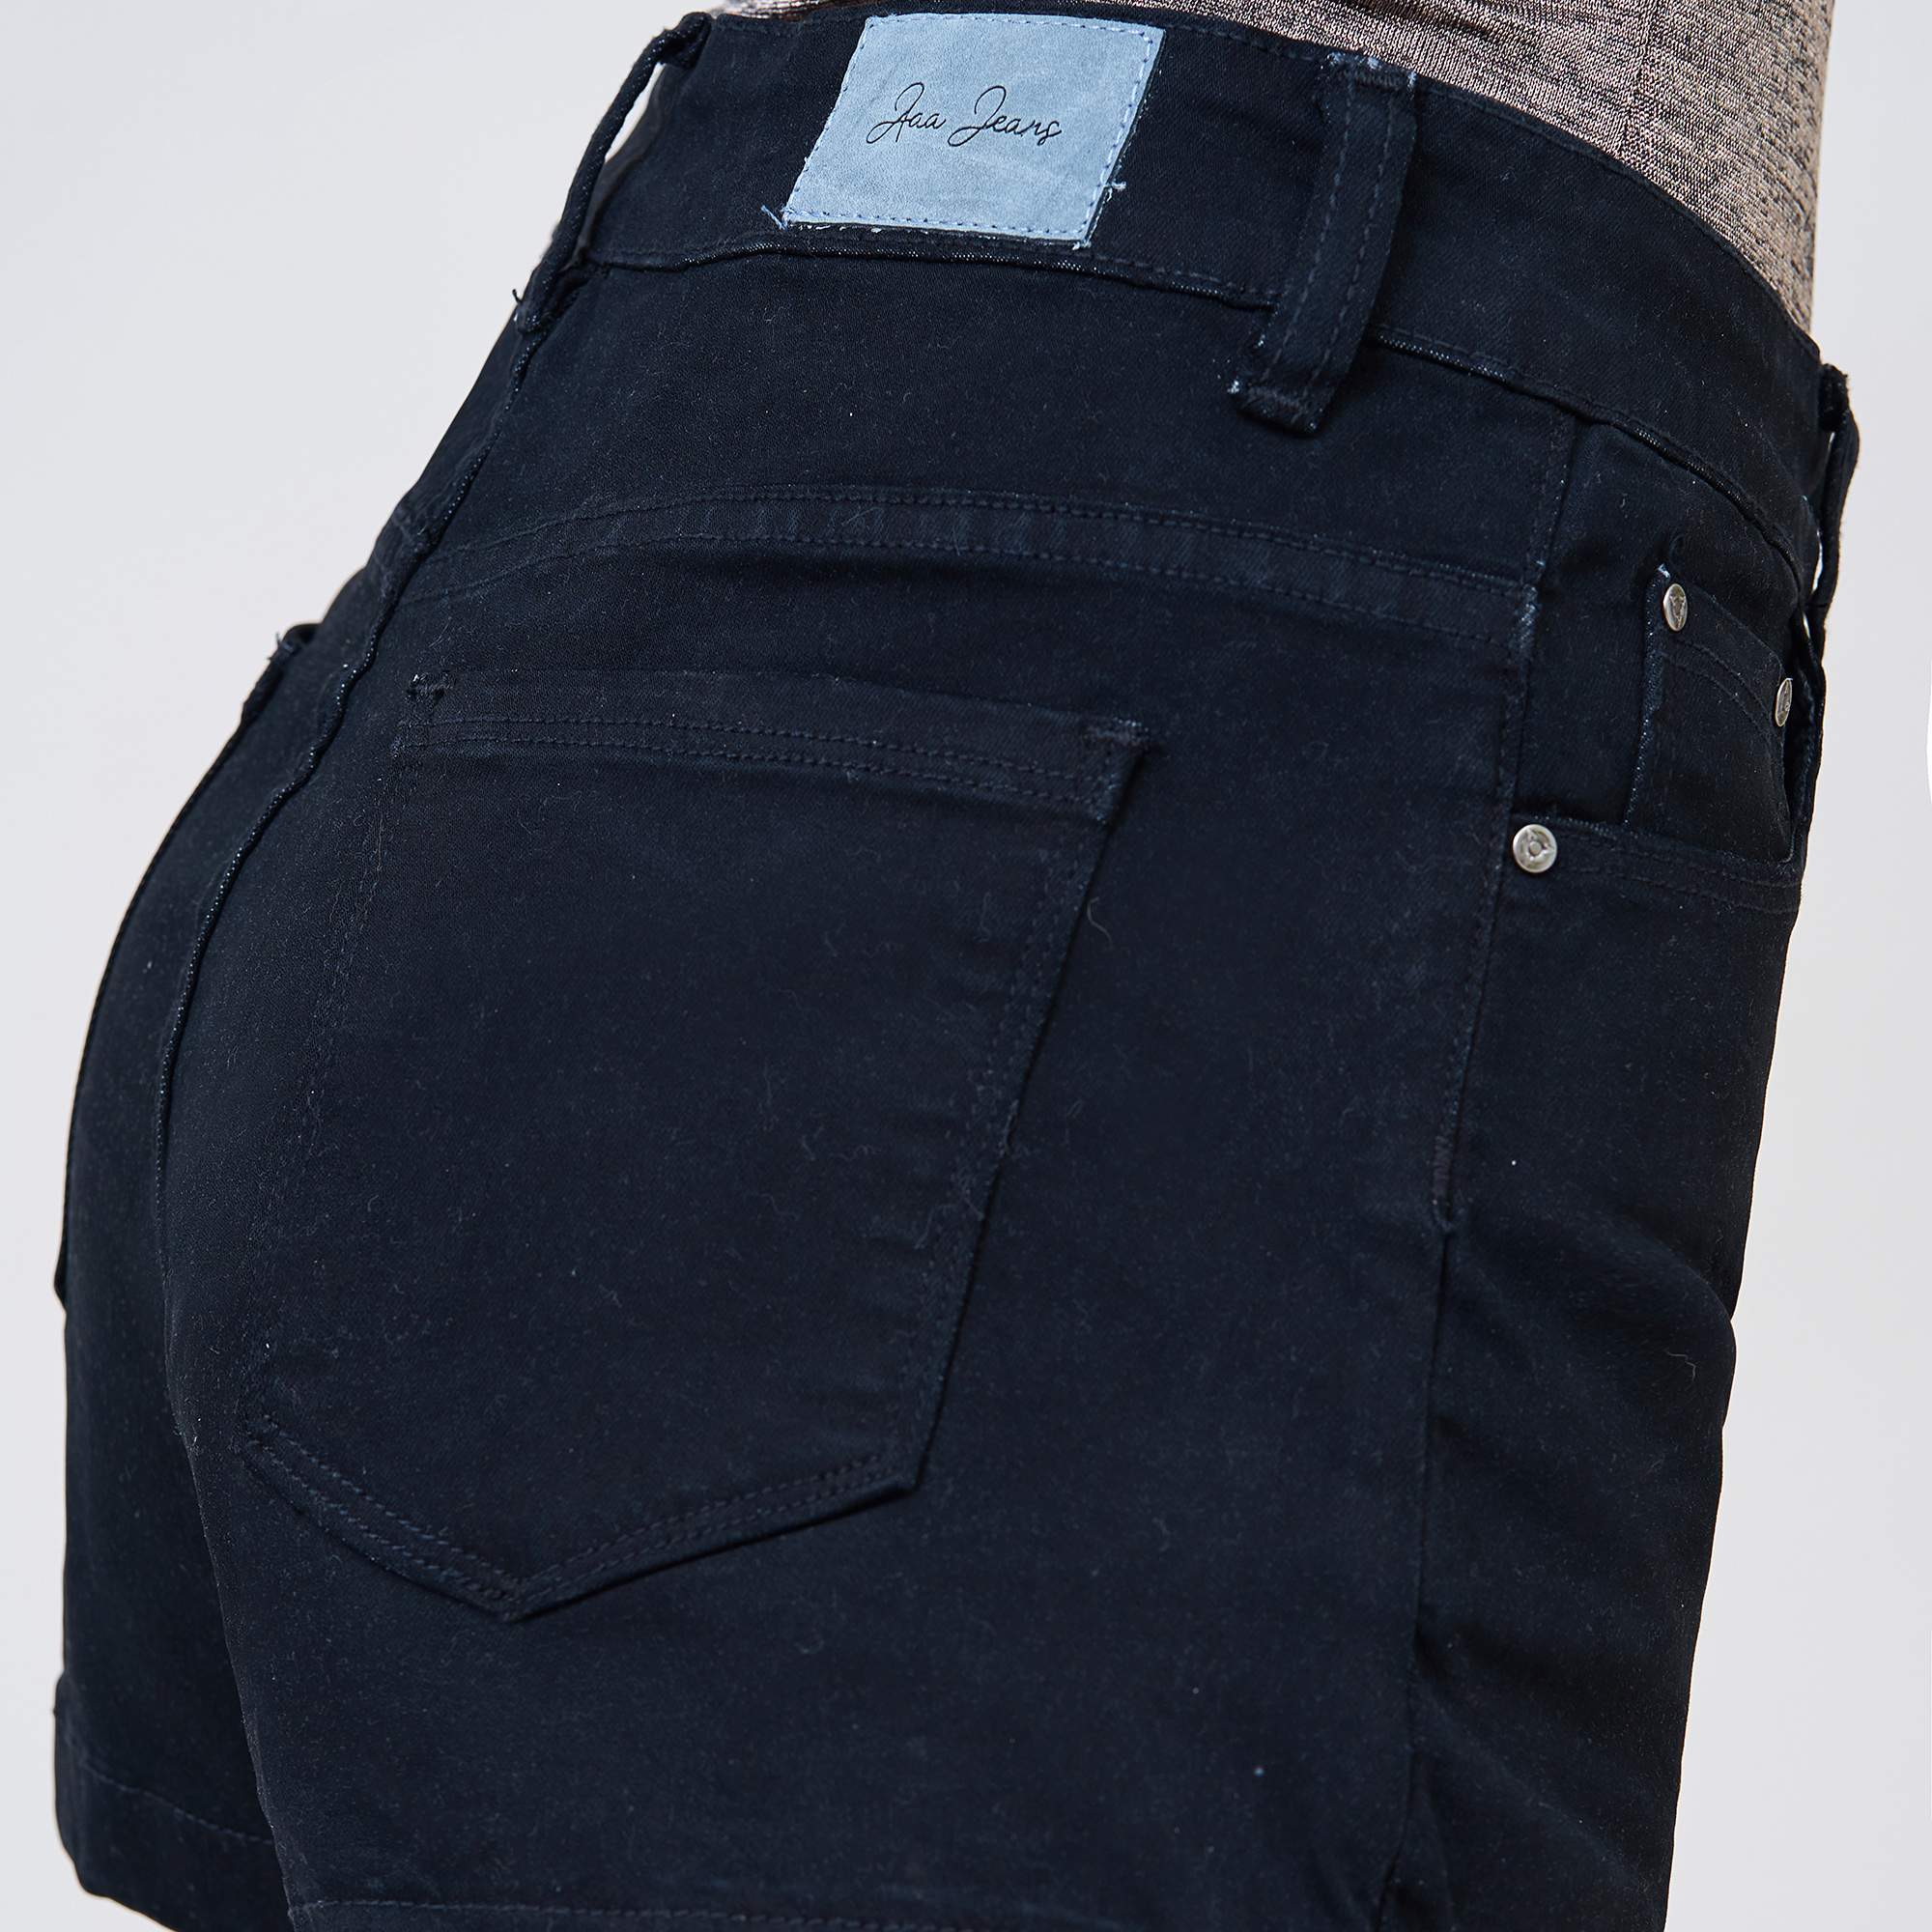 quần short nữ lưng cao trơn màu đen - UCSD RAYON size